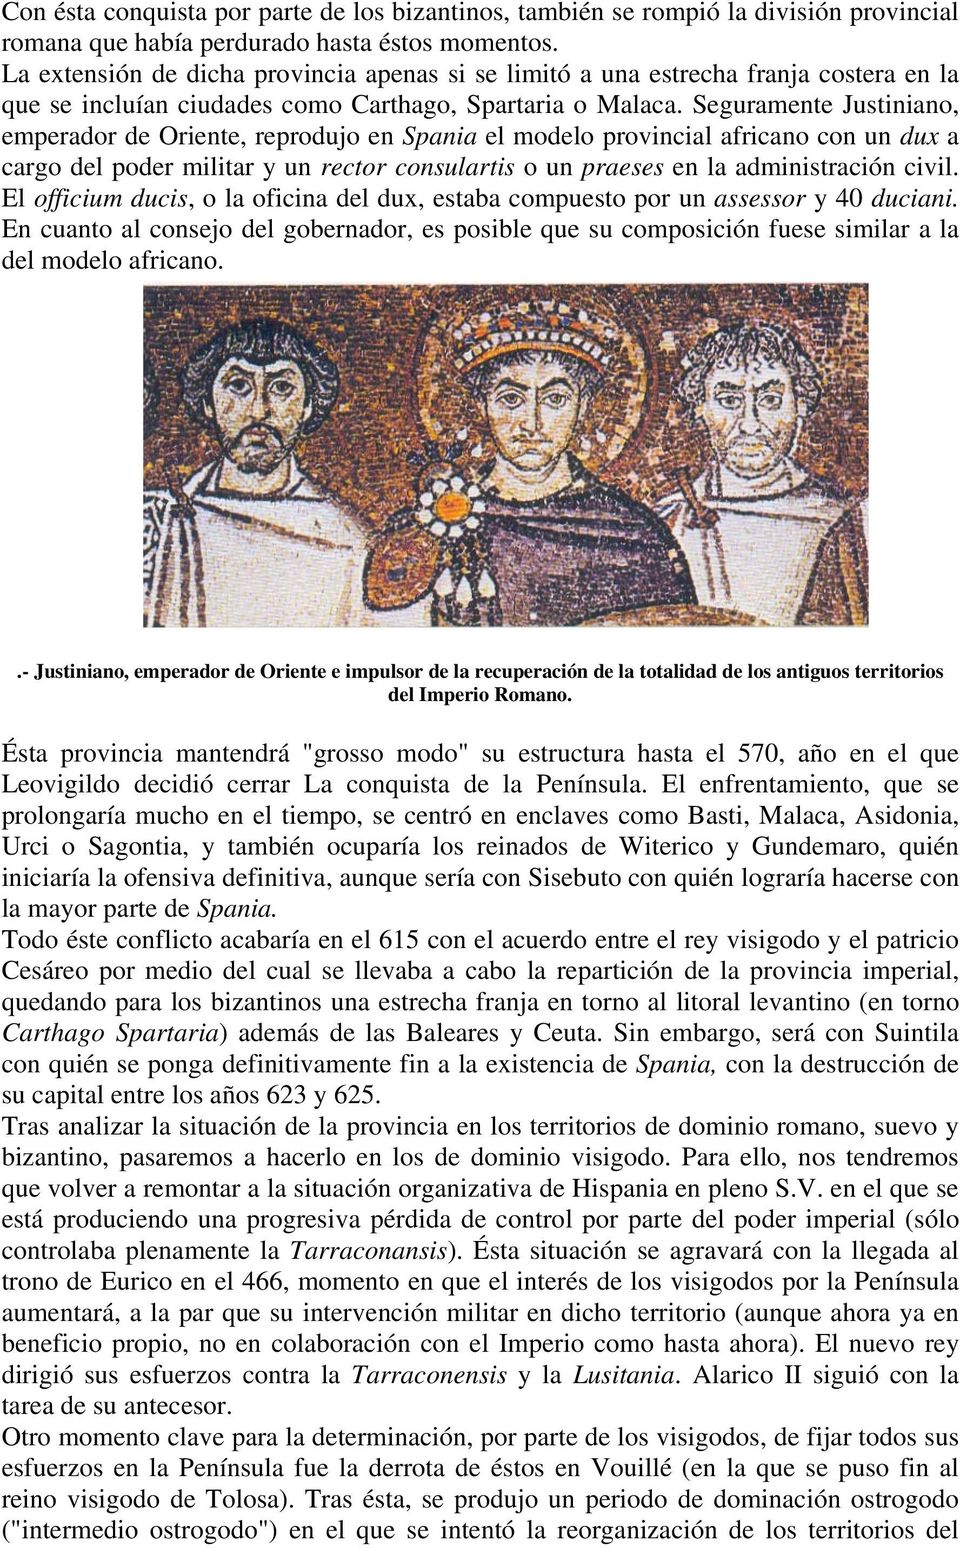 Seguramente Justiniano, emperador de Oriente, reprodujo en Spania el modelo provincial africano con un dux a cargo del poder militar y un rector consulartis o un praeses en la administración civil.